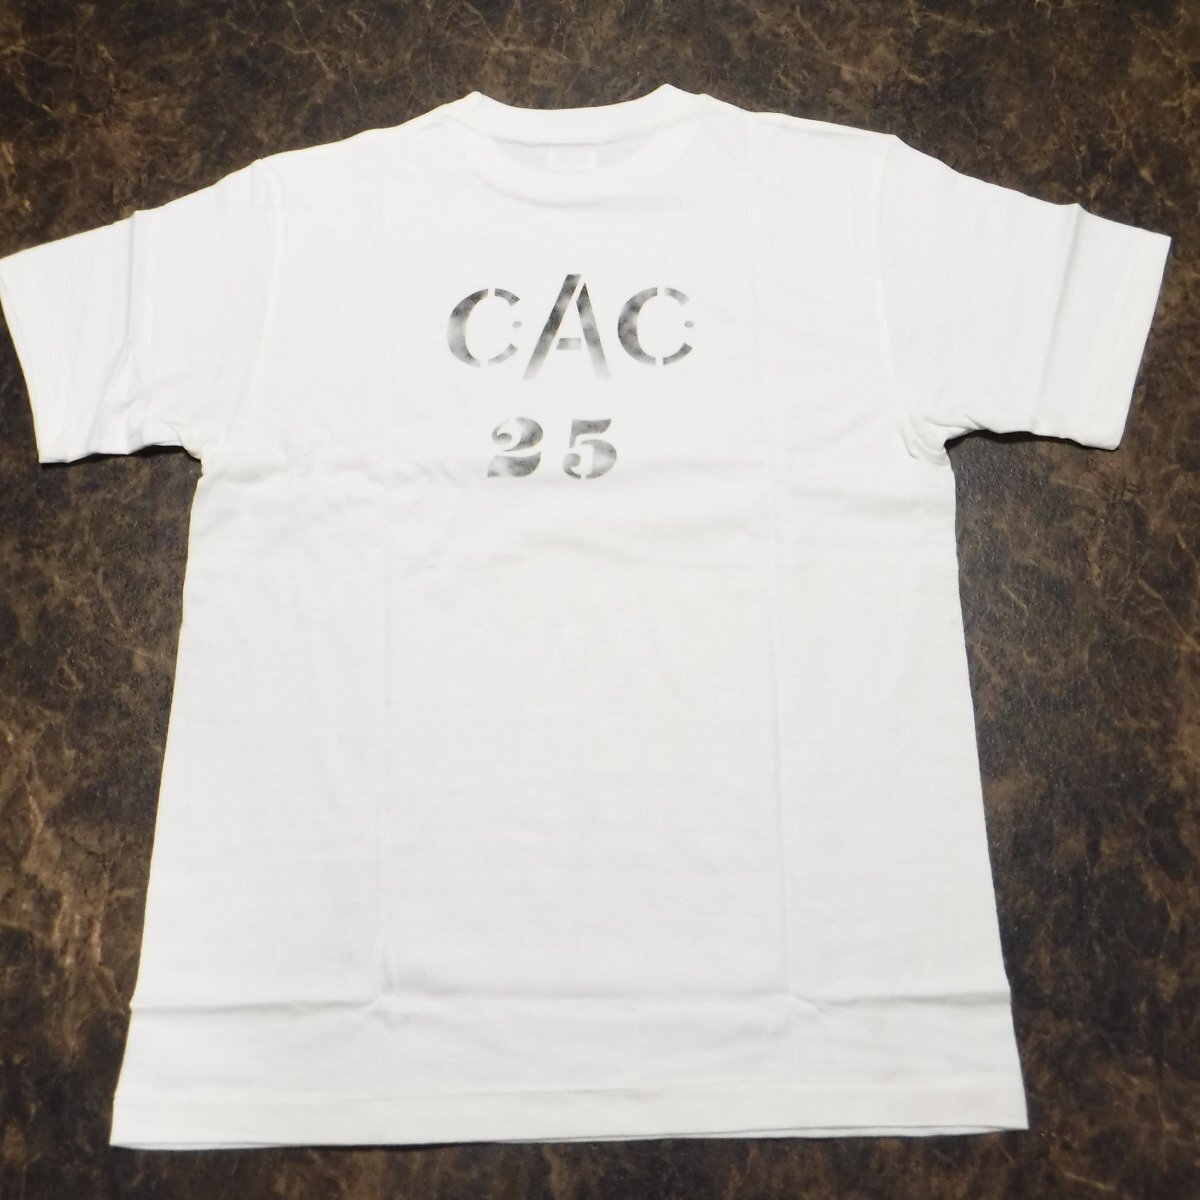 TT287 ウエアハウス × ダブルワークス 新品 C.A.C. 25 両面 かすれプリント 半袖Tシャツ M(38-40) 日本製 DUBBLEWORKS_画像2